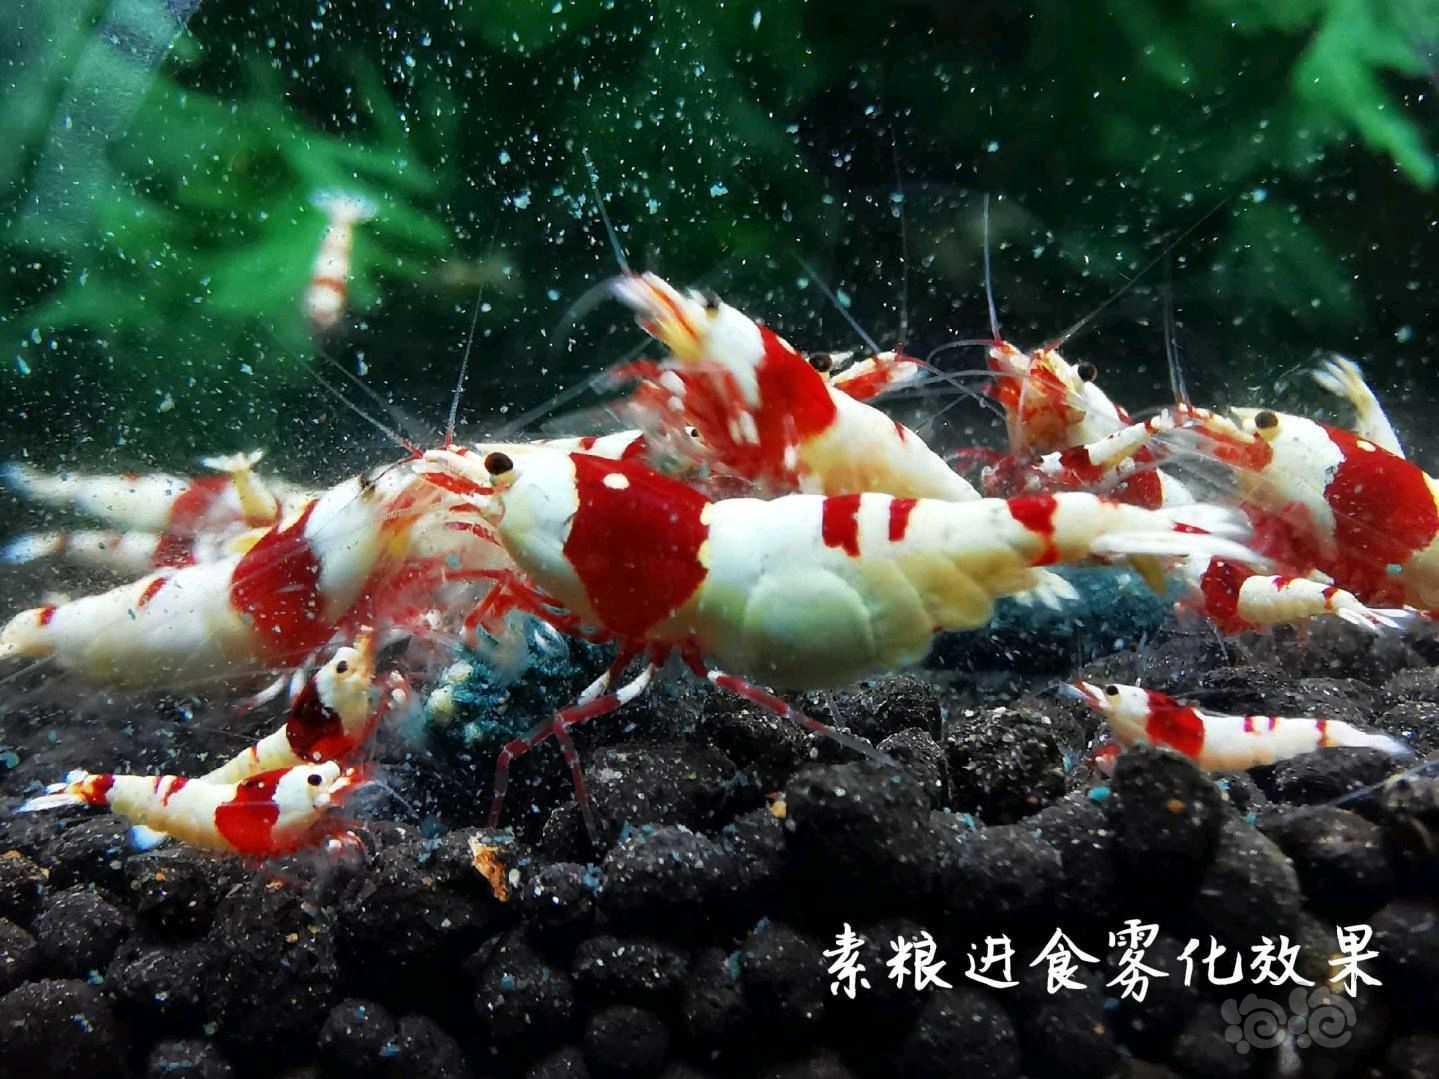 【用品】2021-05-31#RMB拍卖瑾福水晶虾粮一套-图6